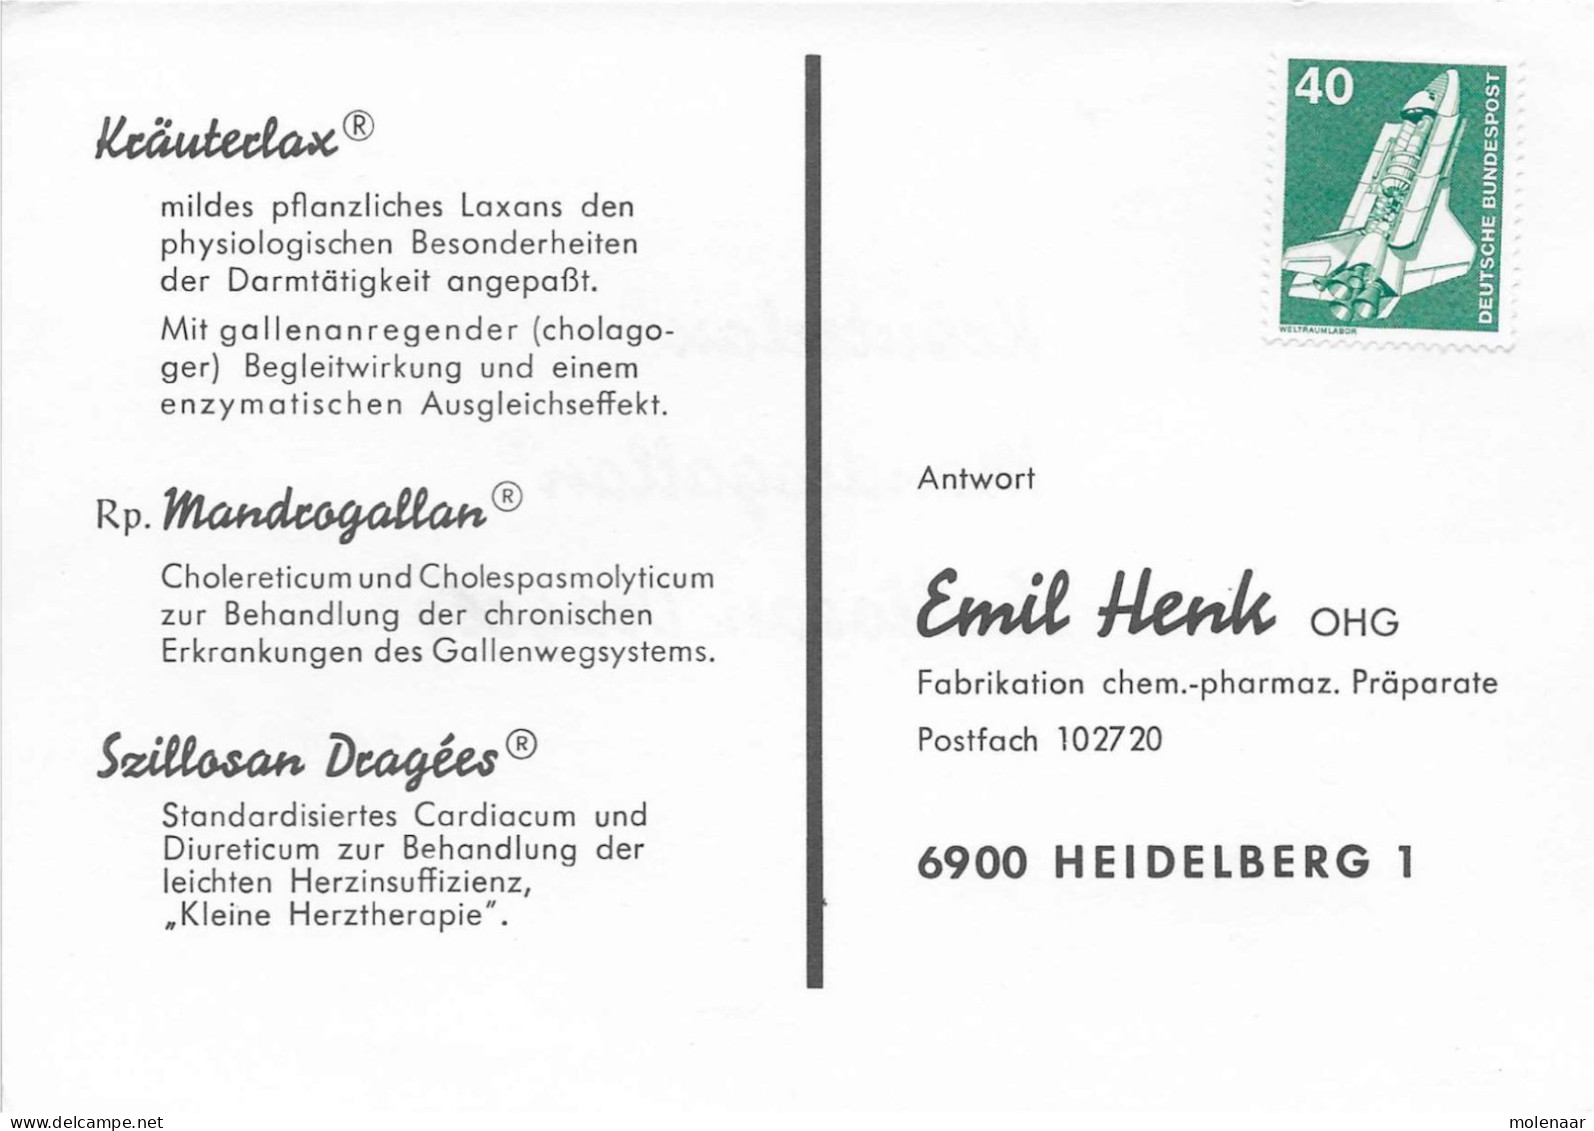 Postzegels > Europa > Duitsland > West-Duitsland > 1970-1979 > Kaart Met No. 850 (17309) - Cartas & Documentos